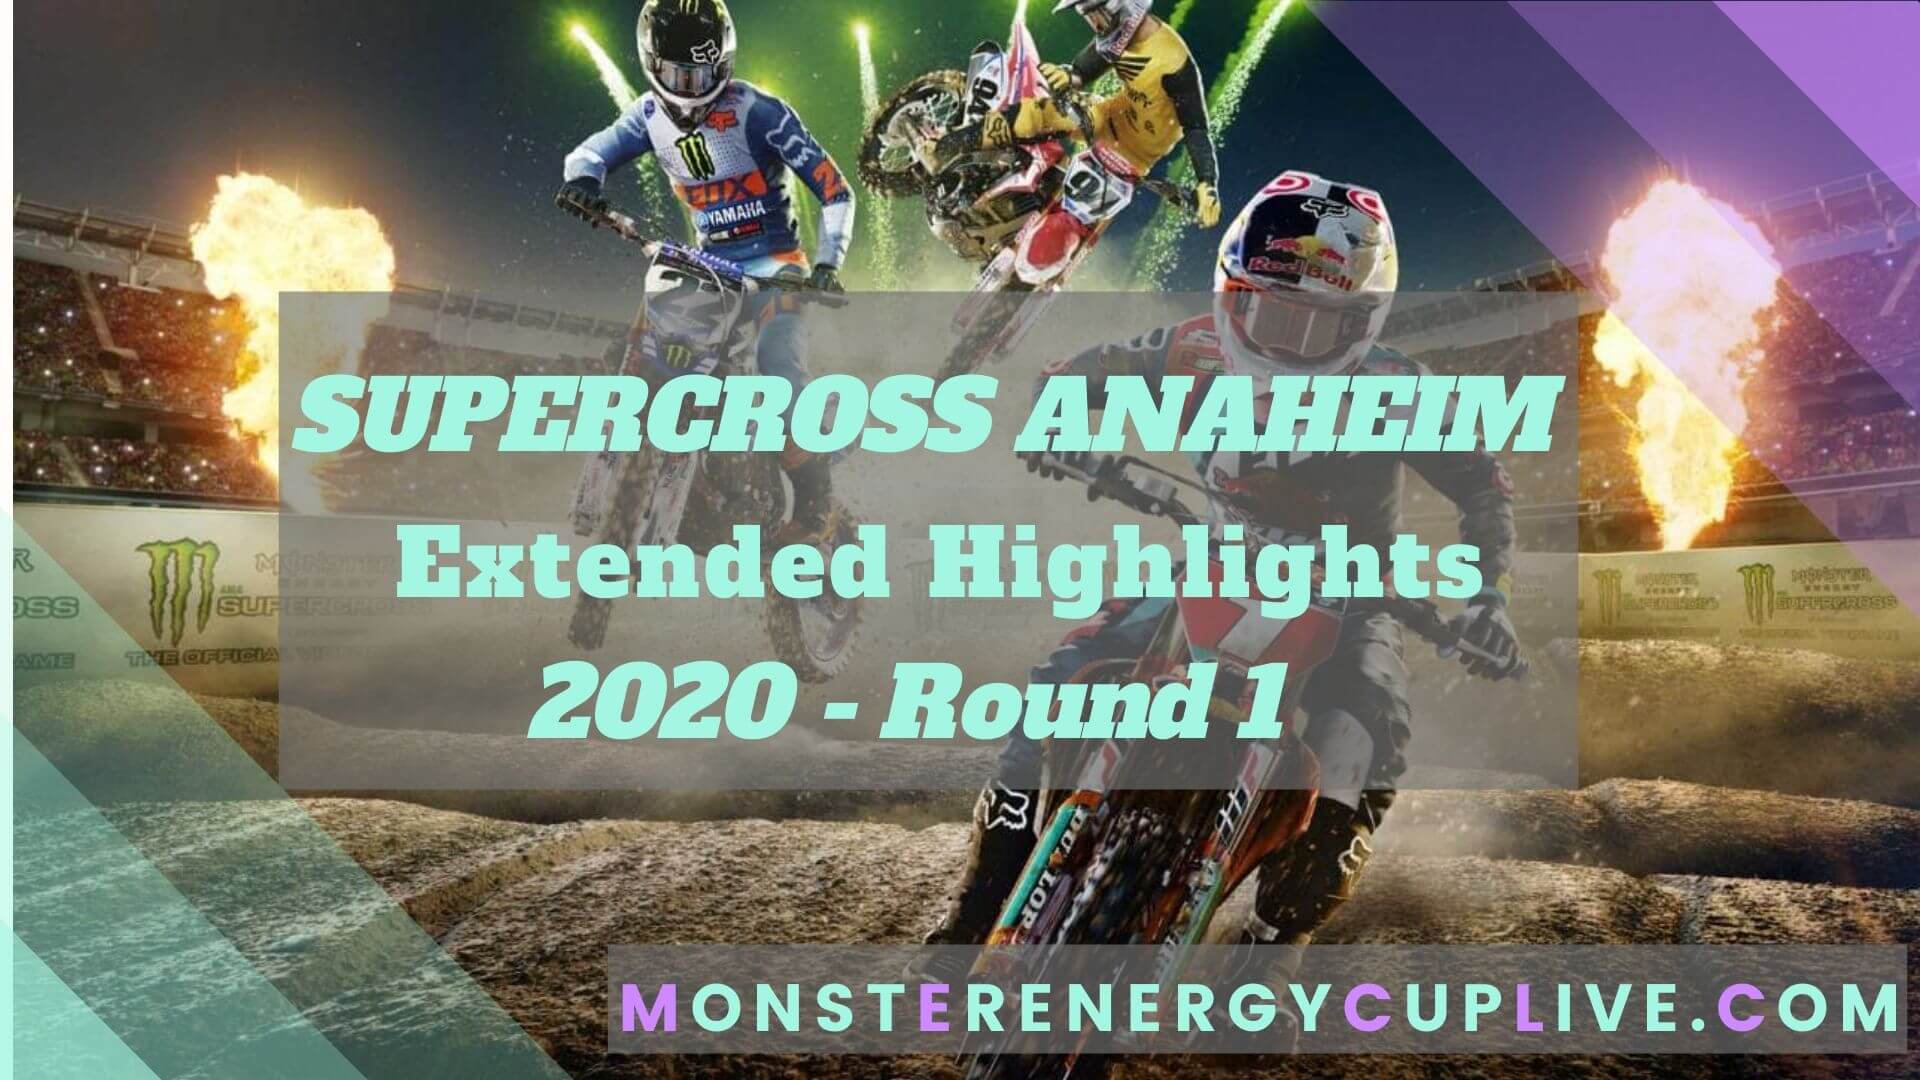 Anaheim Supercross 2020 Extended Highlights